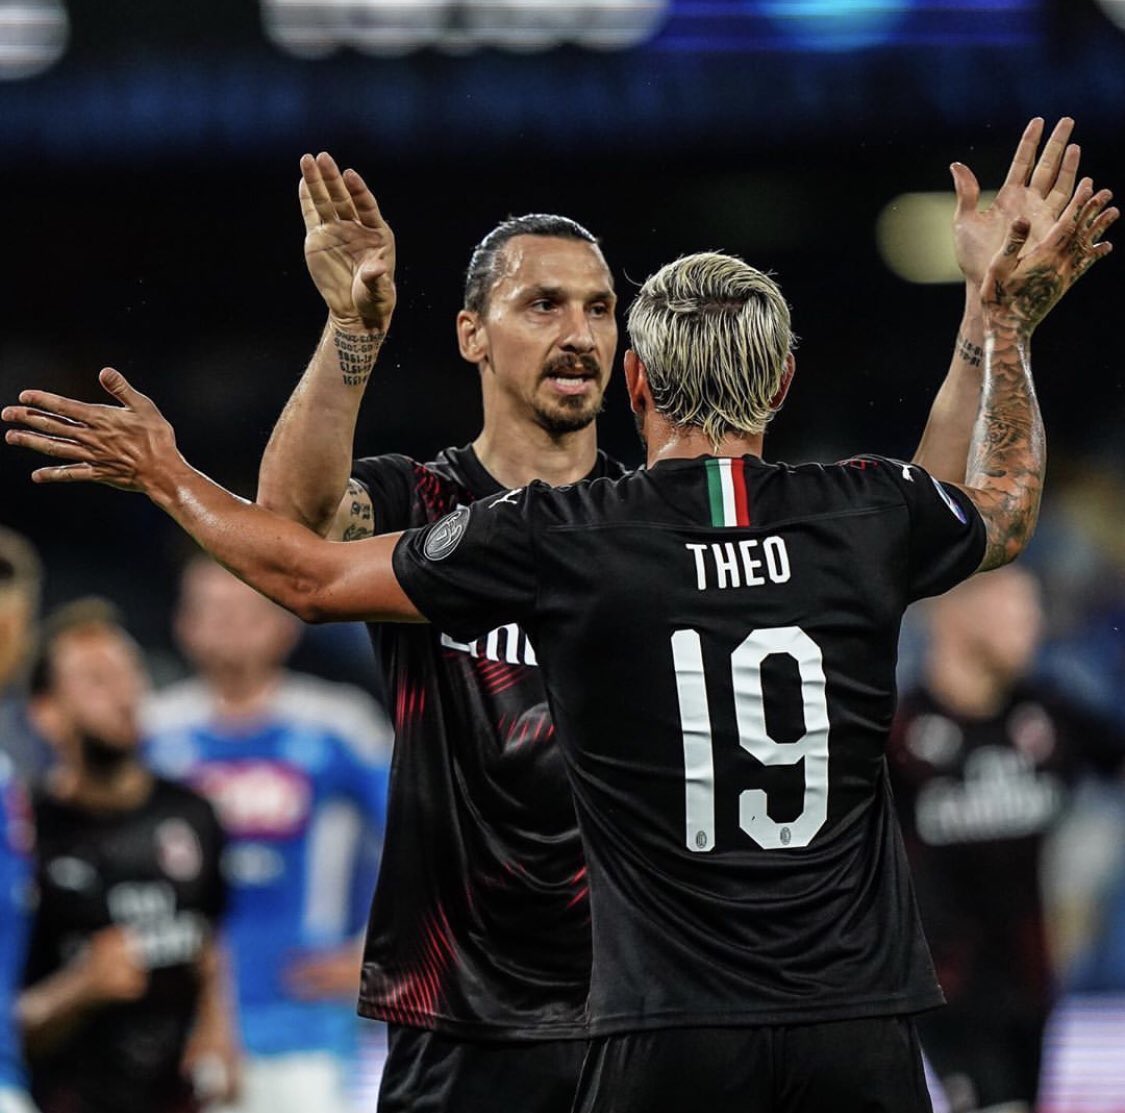 FINAL DEL PARTIDO: Napoli 2-2 Milan (Theo Hernández, Kessié) 🔴⚫️